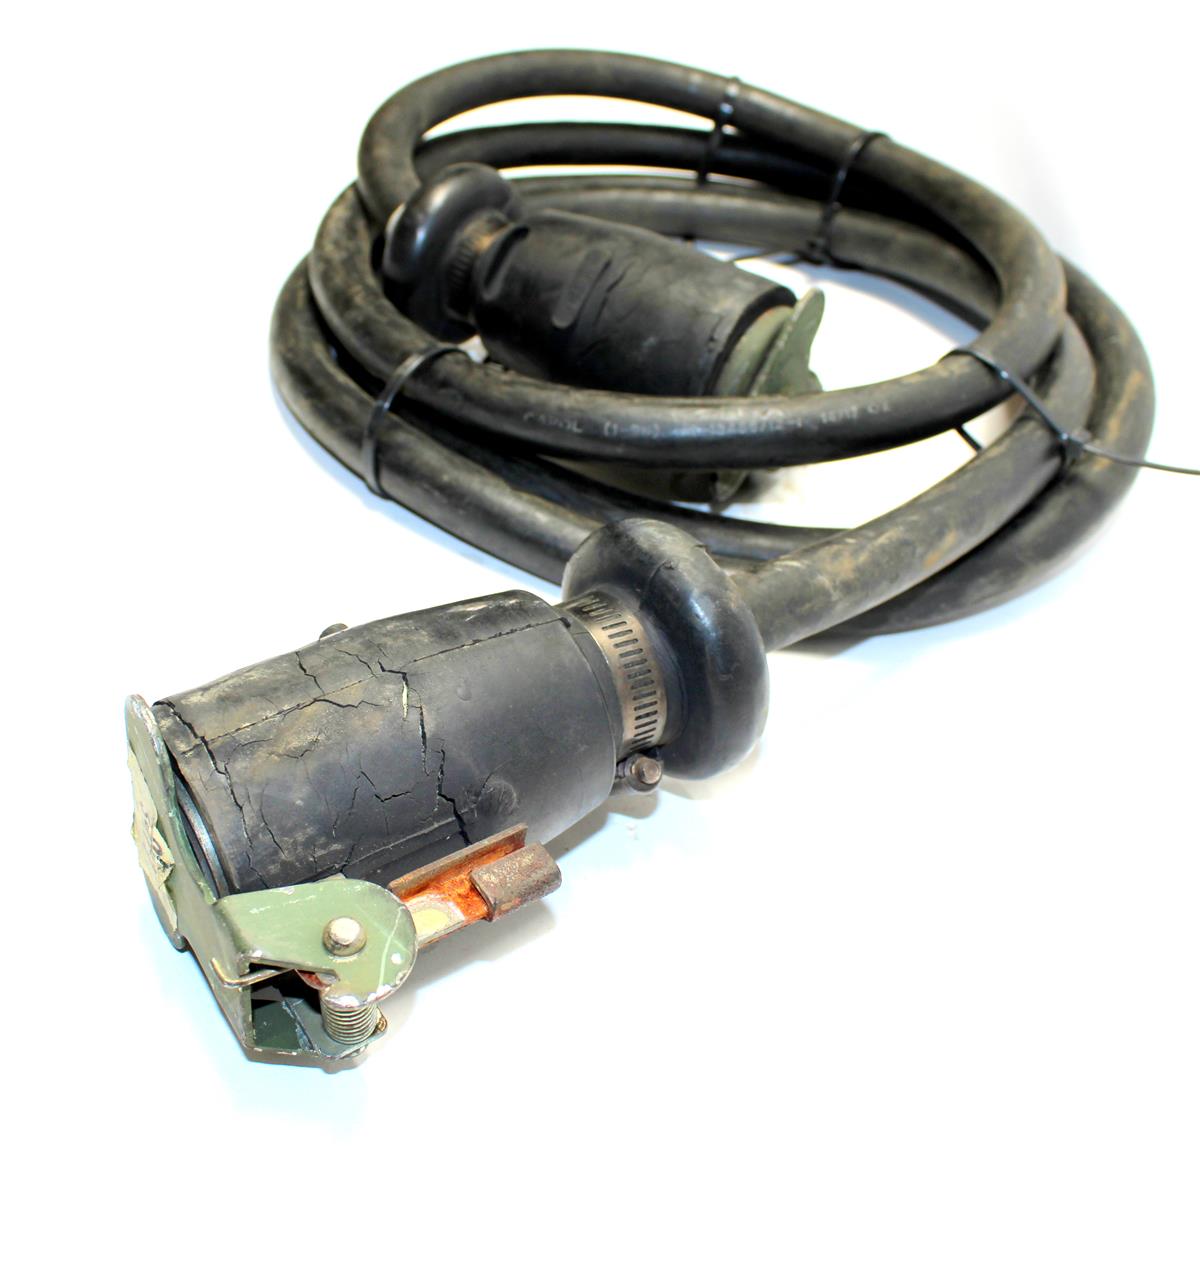 COM-5271 | COM-527 Trailer InterVehicular Cable Assembly 12 Pin  (10).JPG